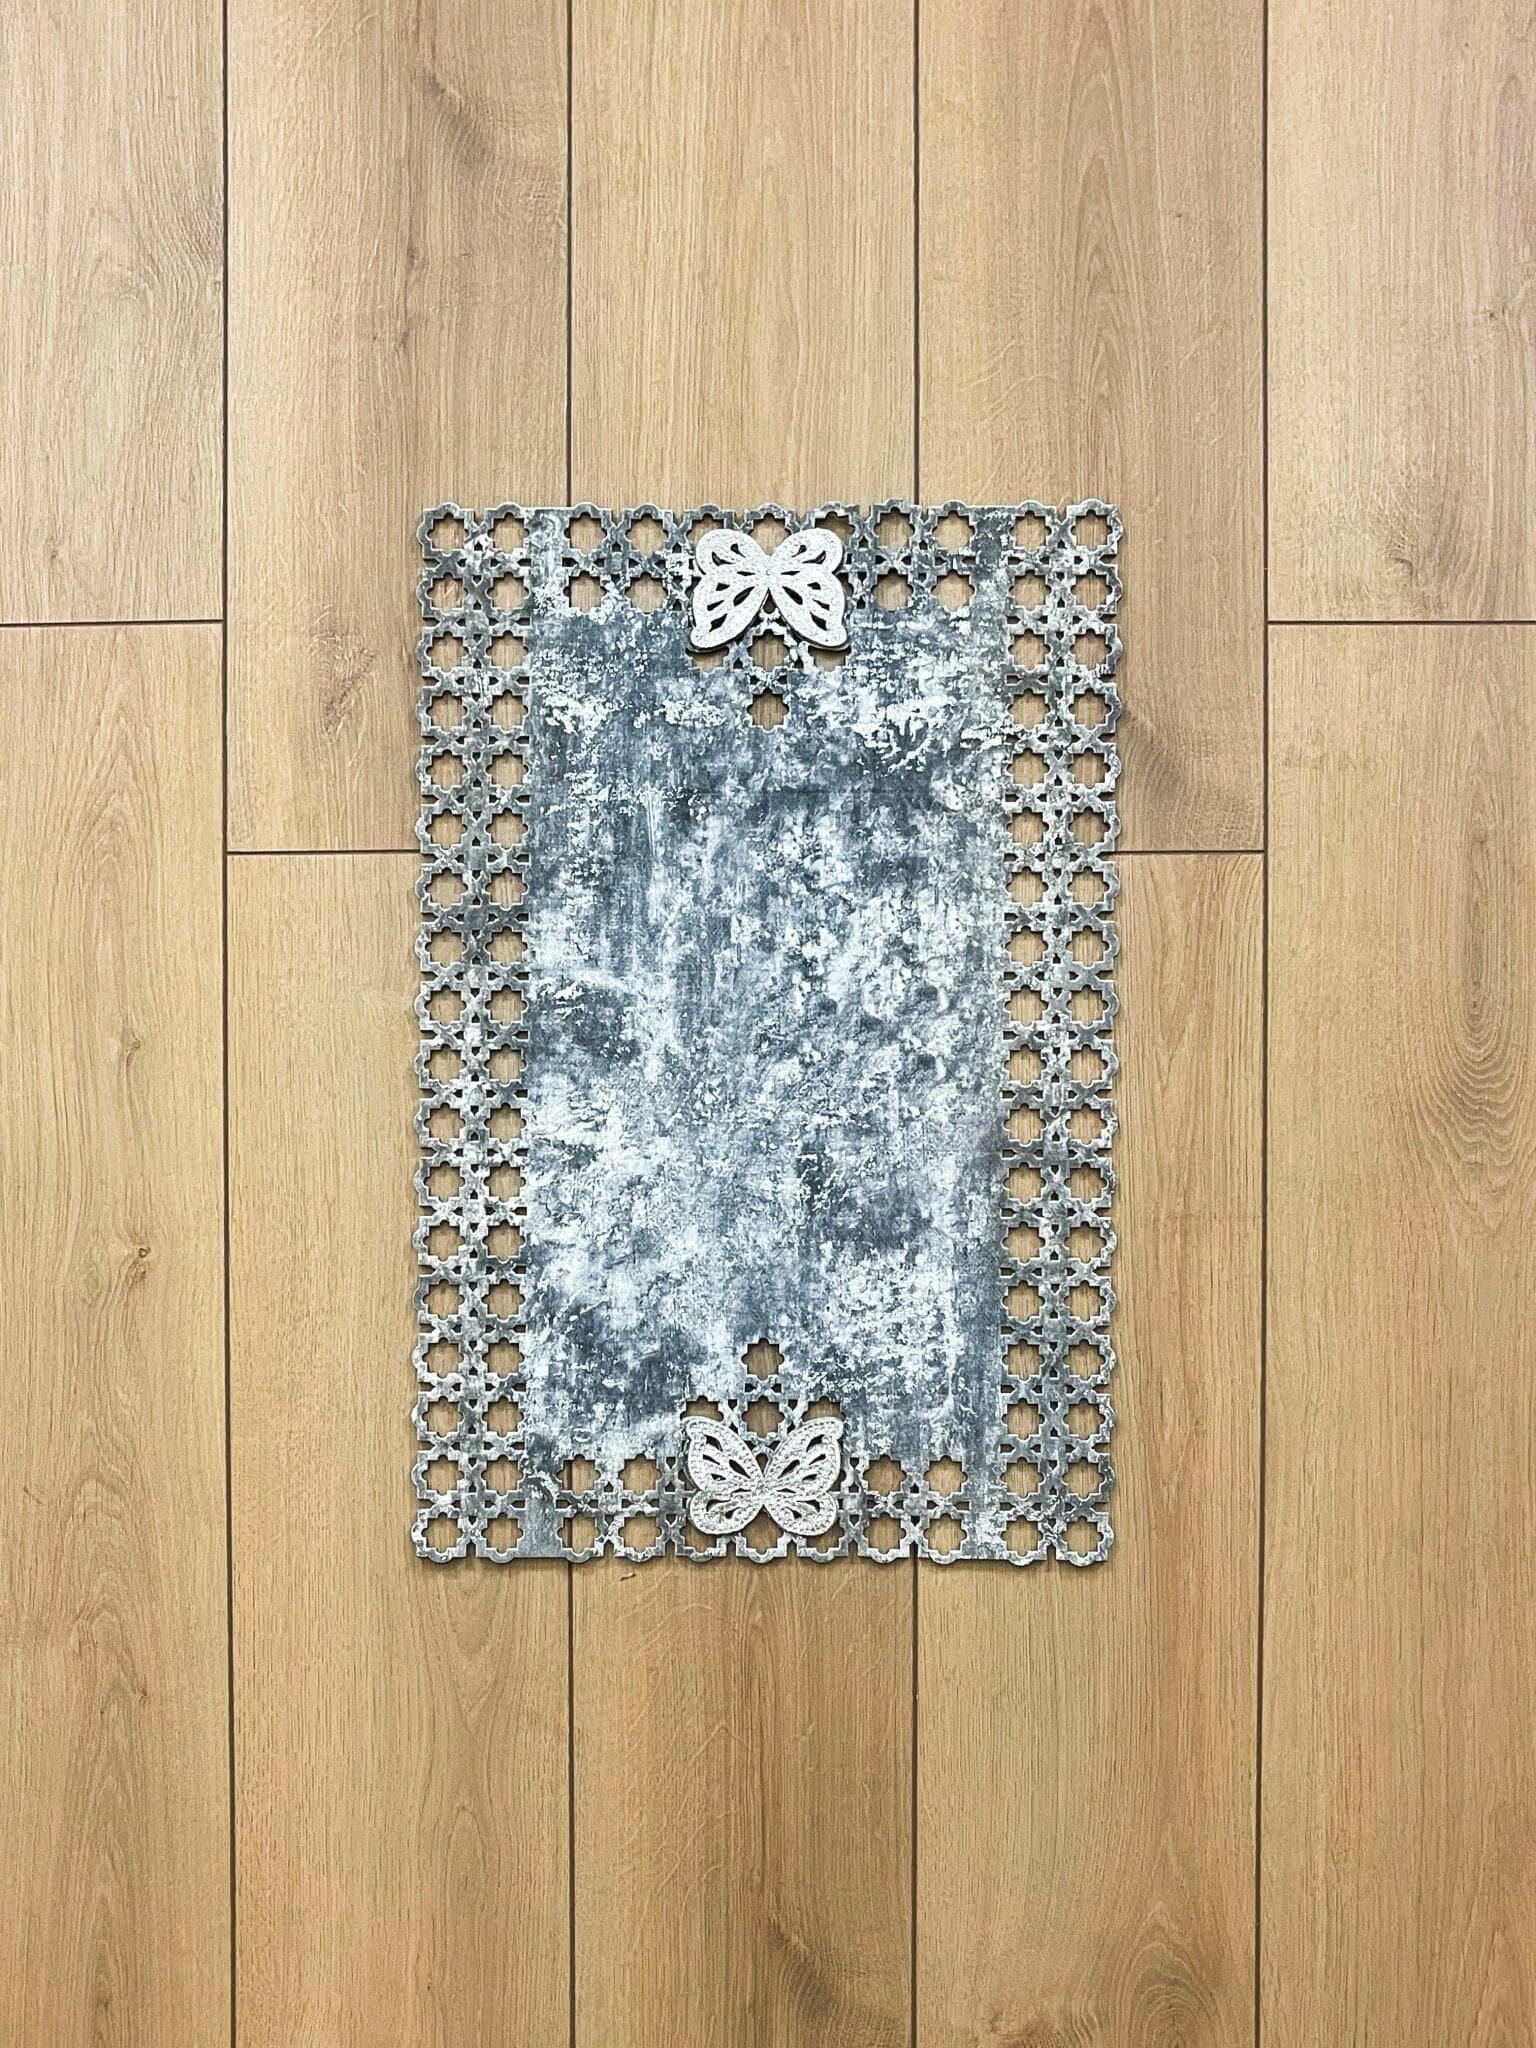 Kelebek Grey Rug - Creative Home Designs, Butterfly Turkish Carpet, Non Slip Washable Velvet Mat